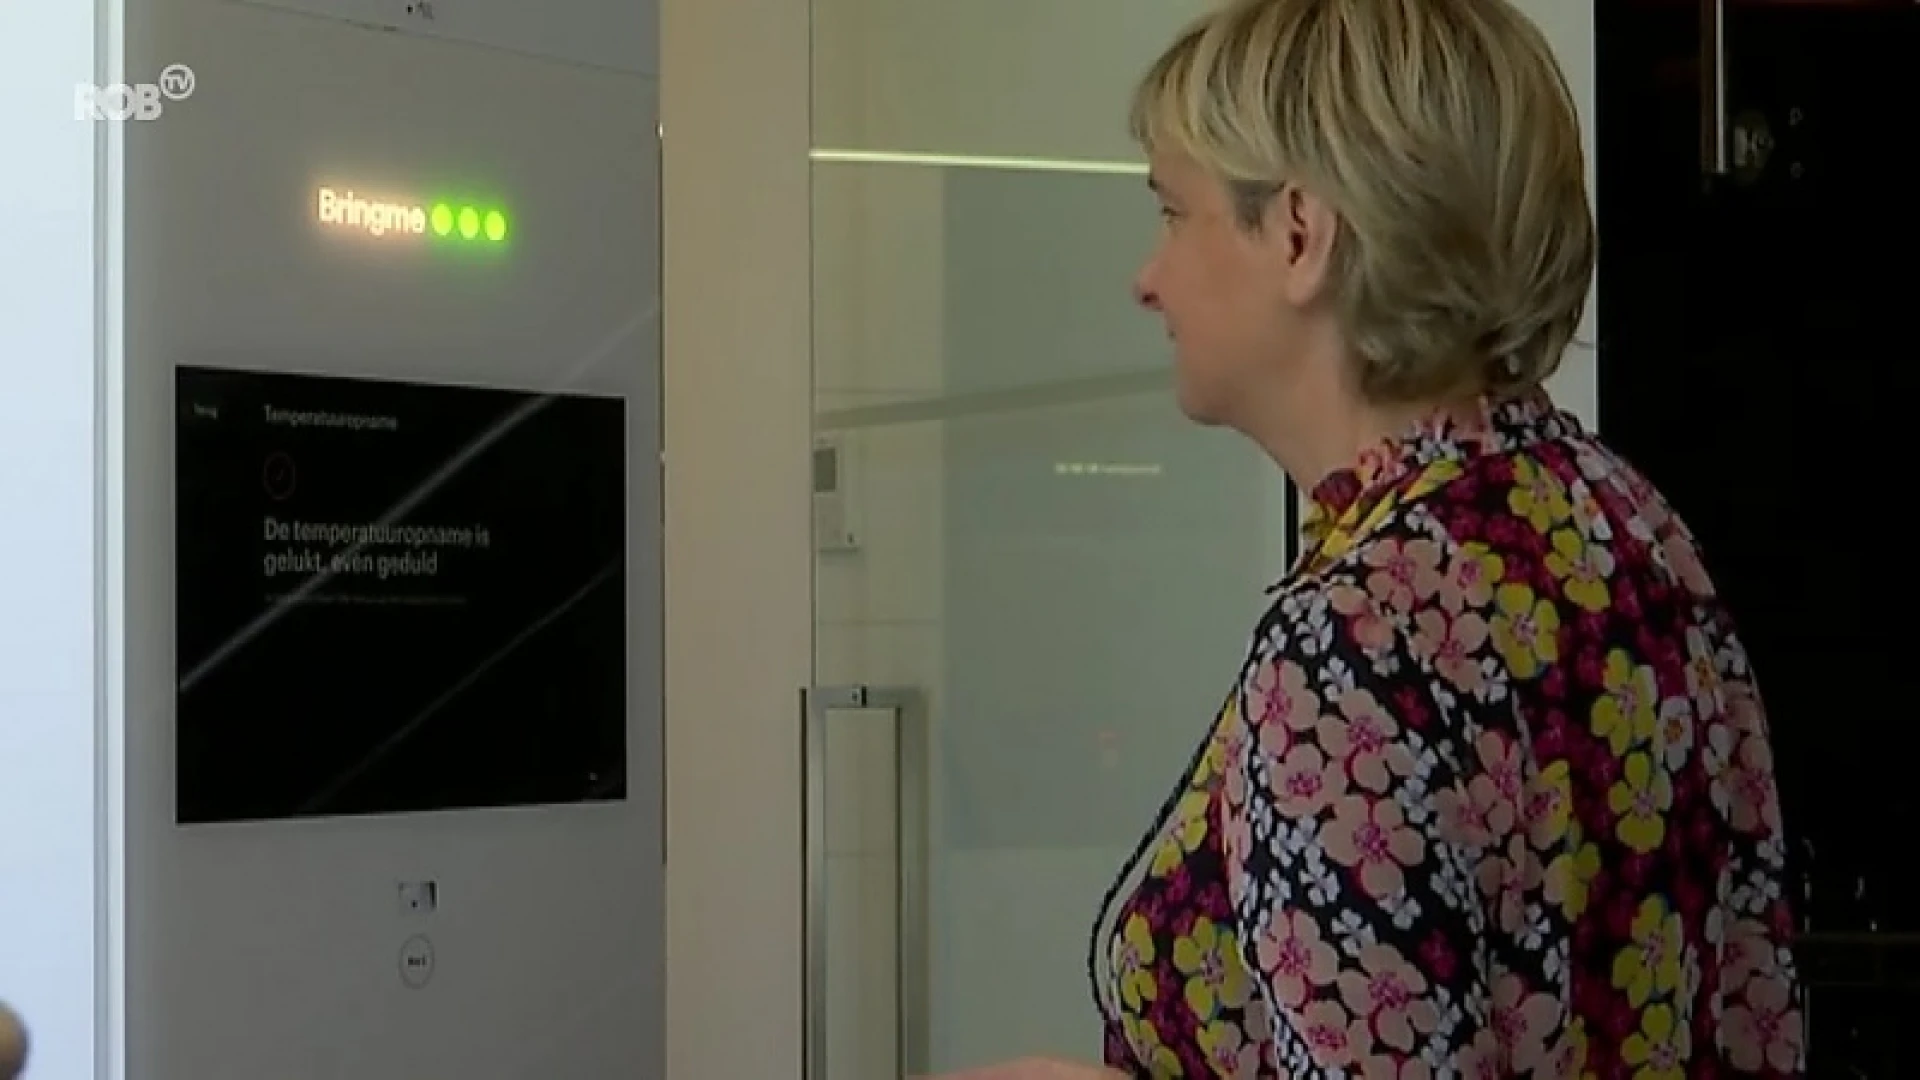 Wereldprimeur in Tienen: eerste virtuele receptionist die corona kan opspeuren